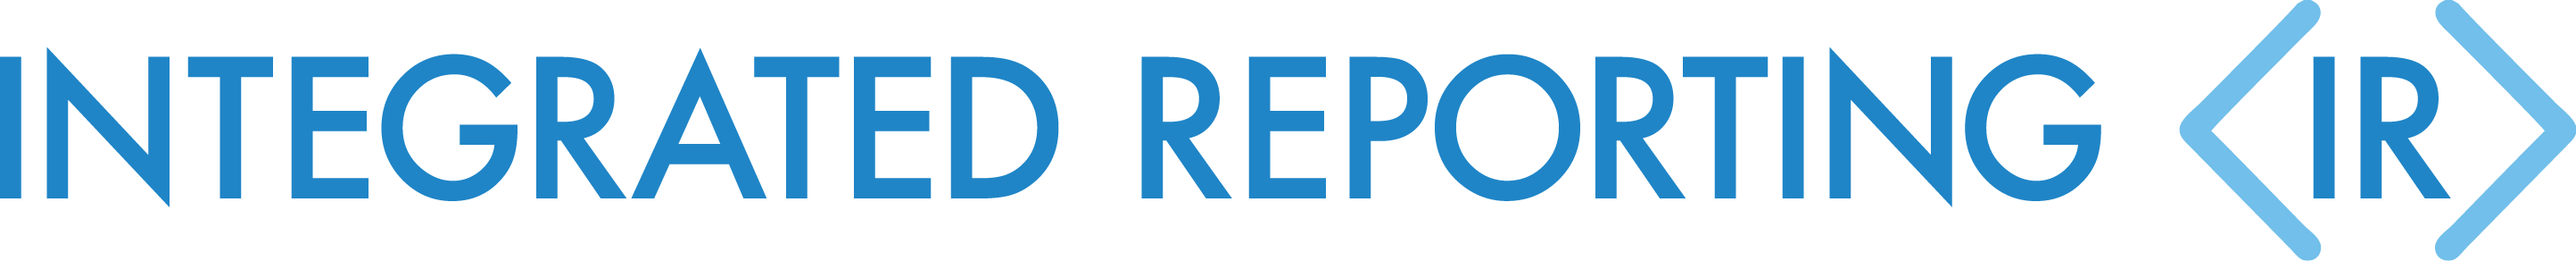 Reporting Logo - Integrated Reporting